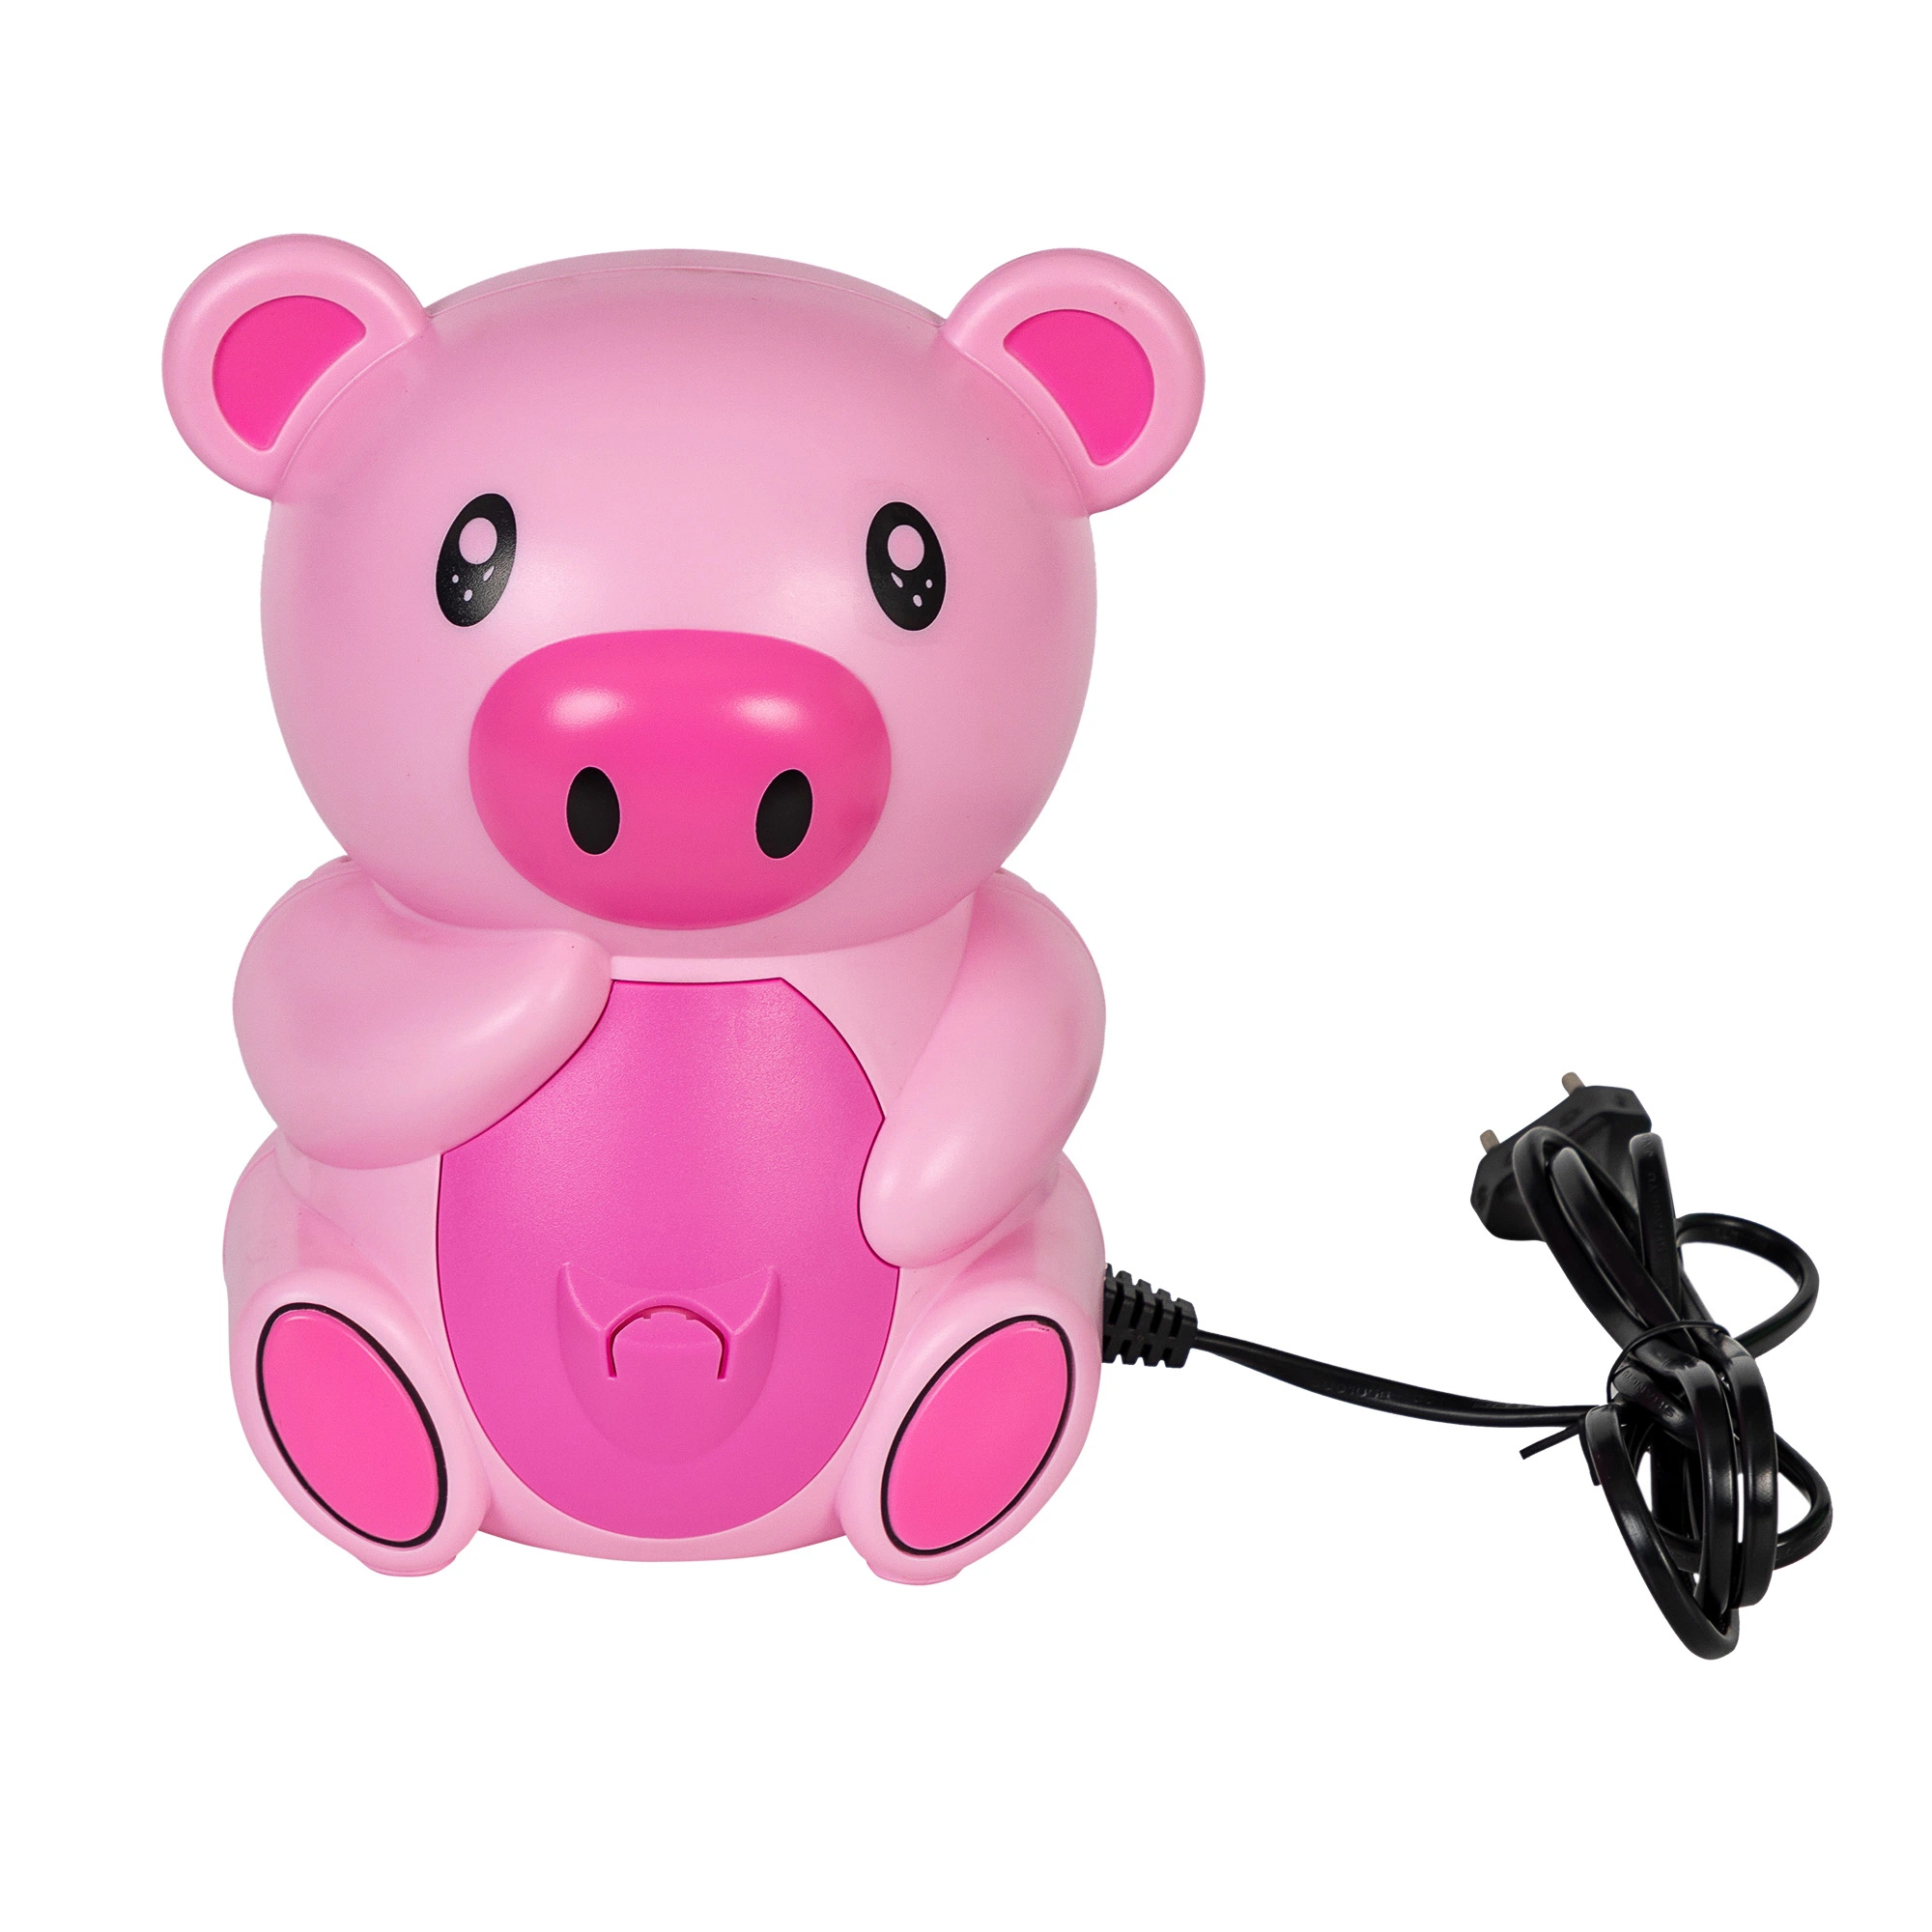 Cute Piggy Design Medical Air Compressor Nebulizer Machine for Kids